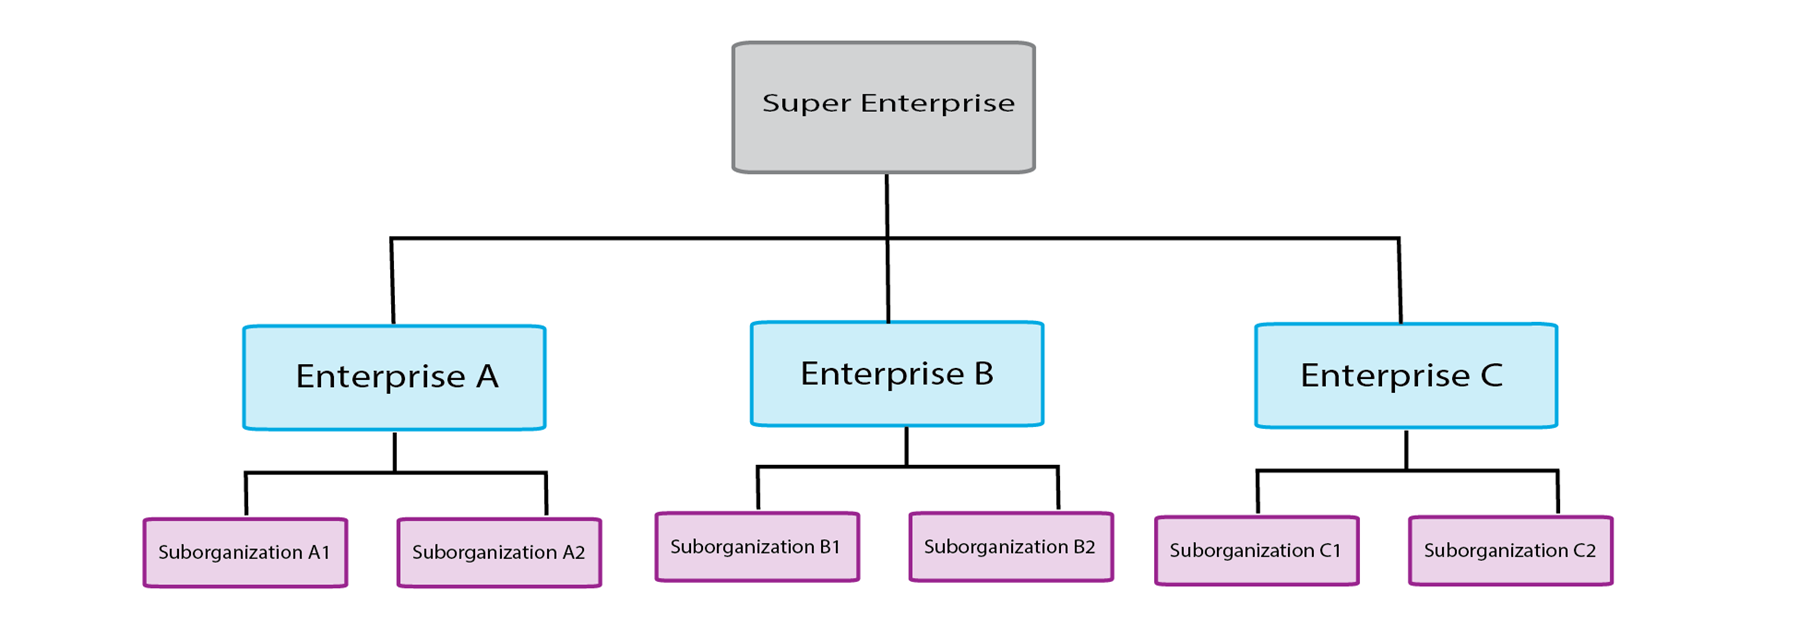 Super Enterprise structure